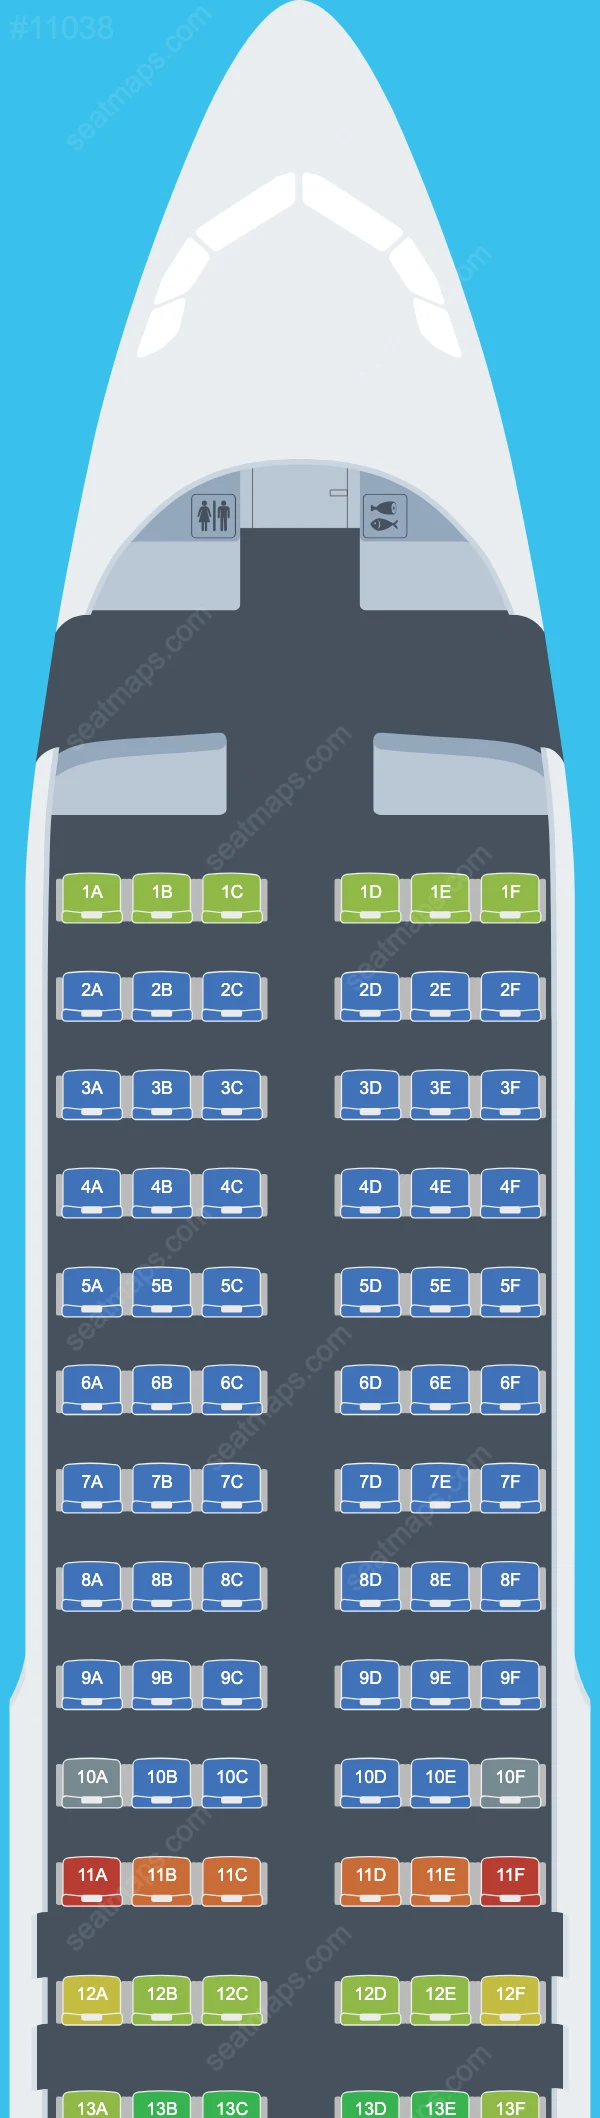 TransNusa Airbus A320 Seat Maps A320-200